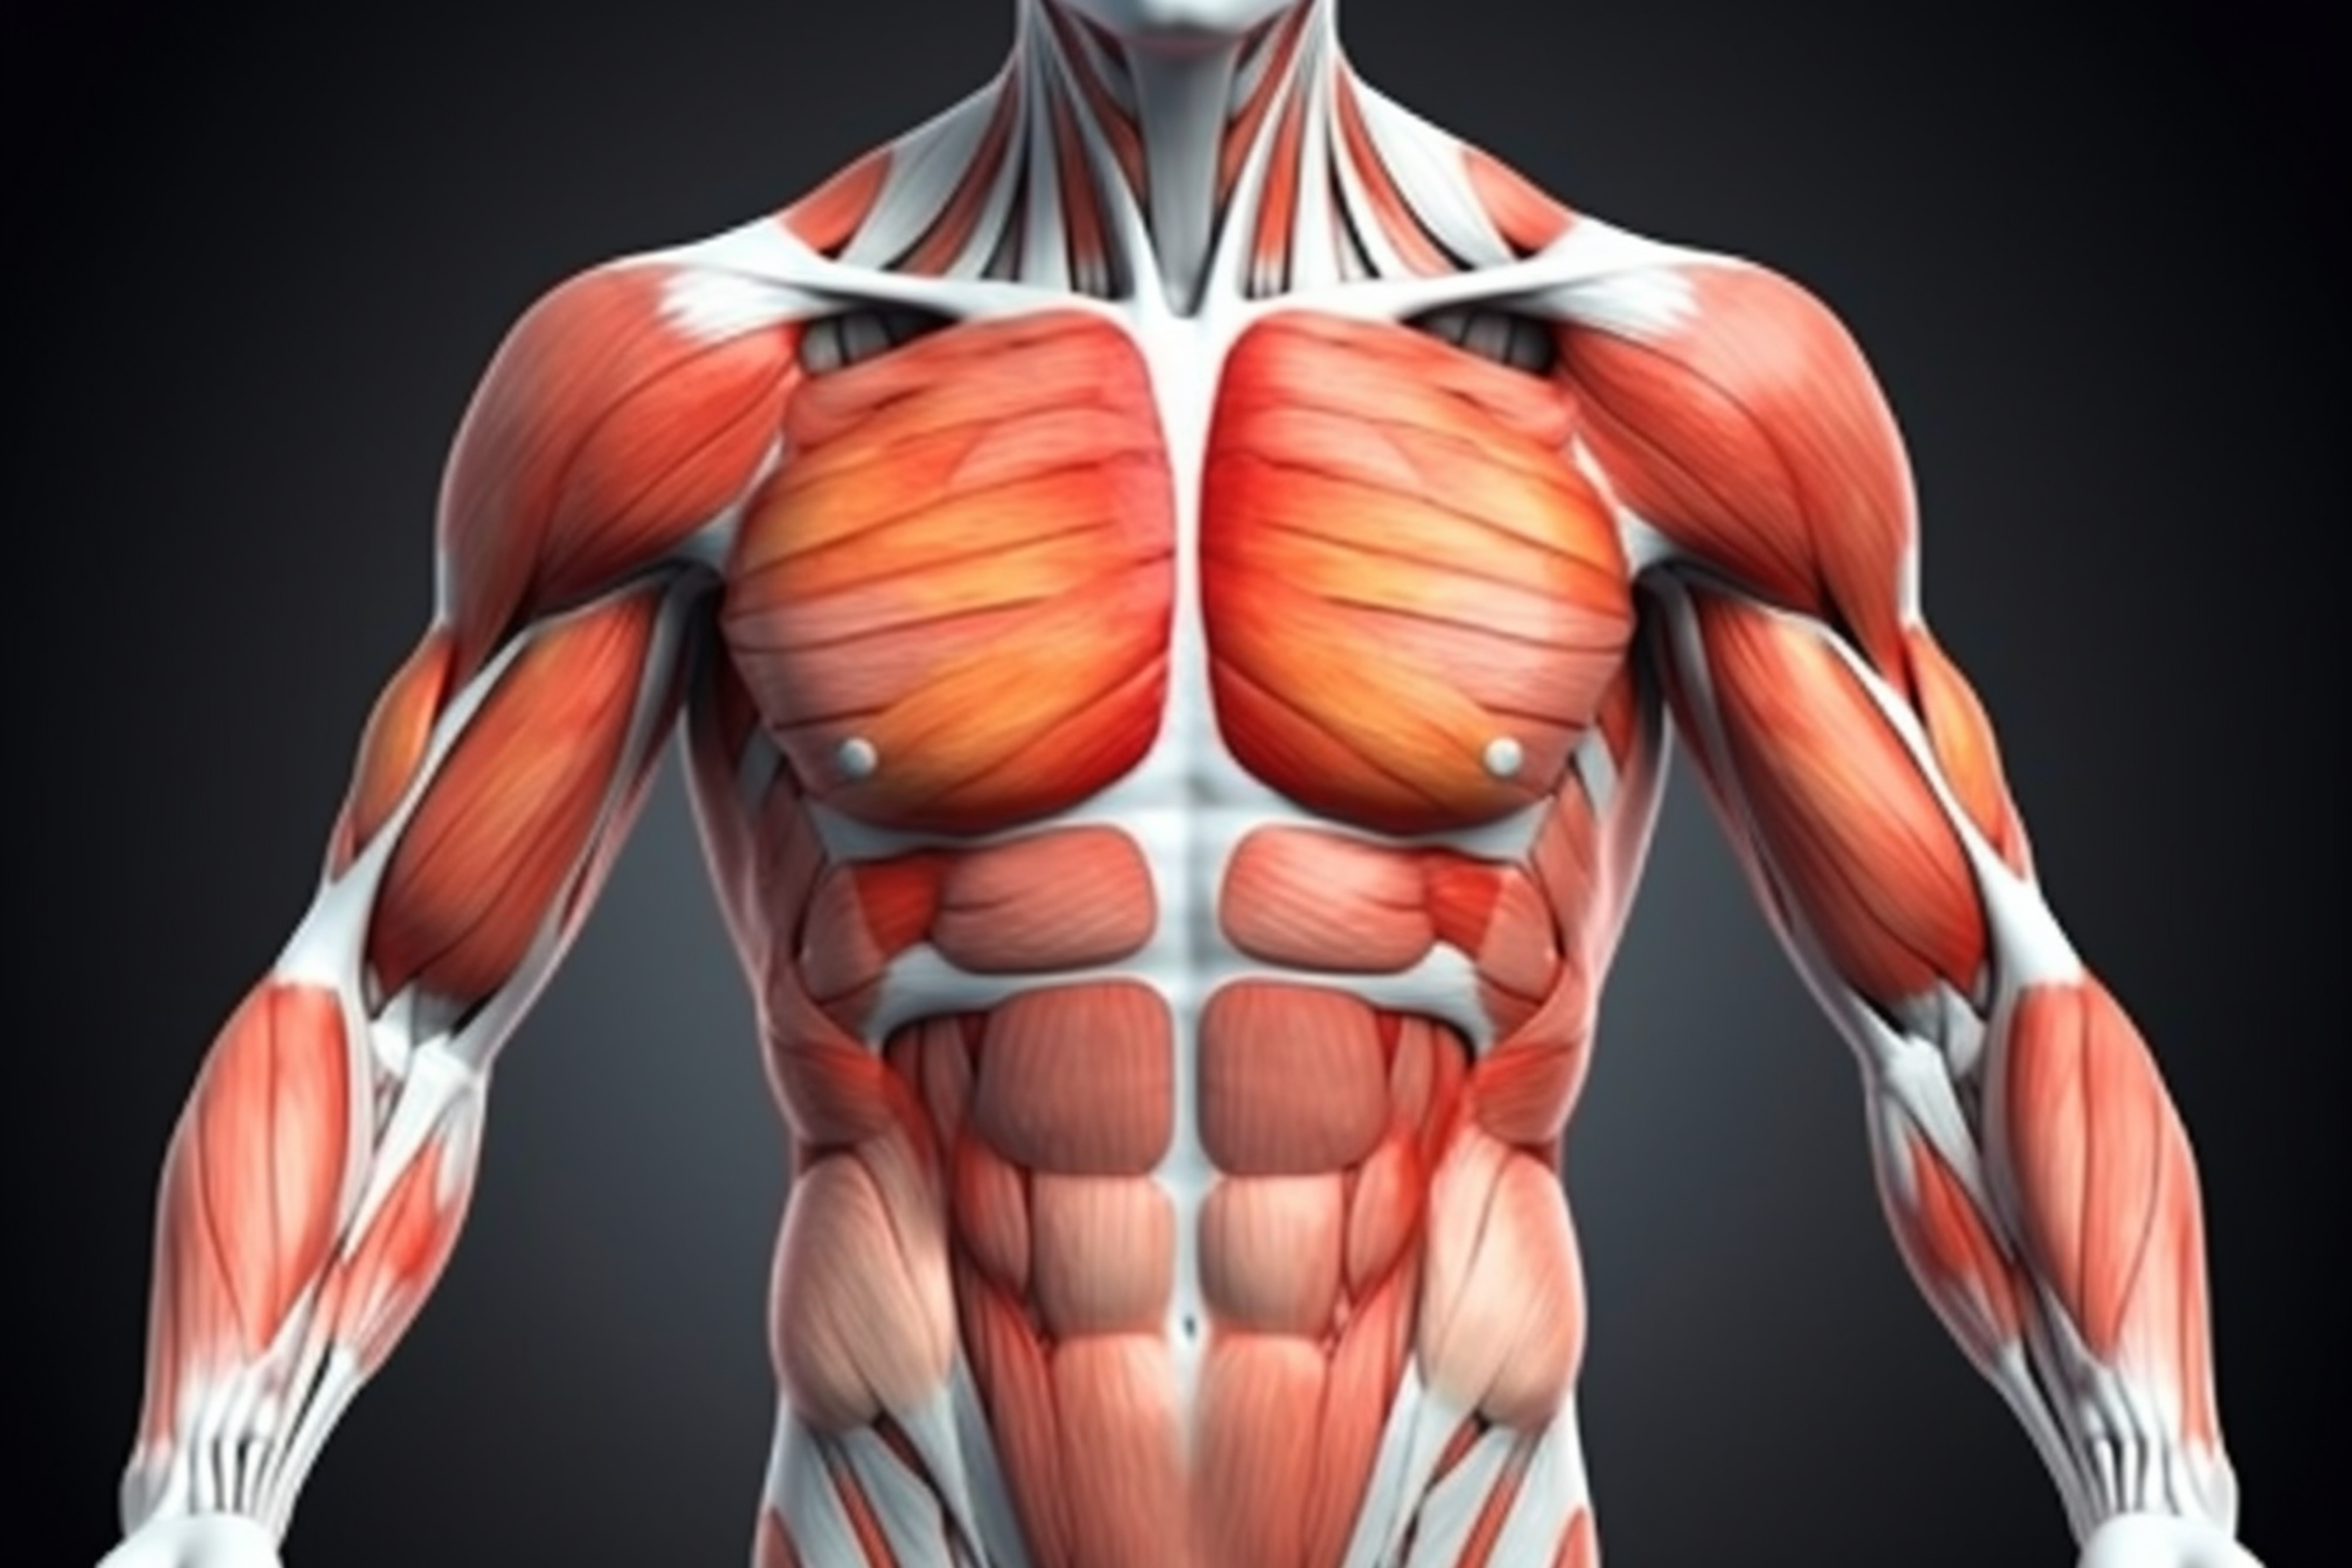 Le muscle petit pectoral est un muscle thoracique situé sous le grand pectoral © Muhammad Shoaib, Adobe Stock